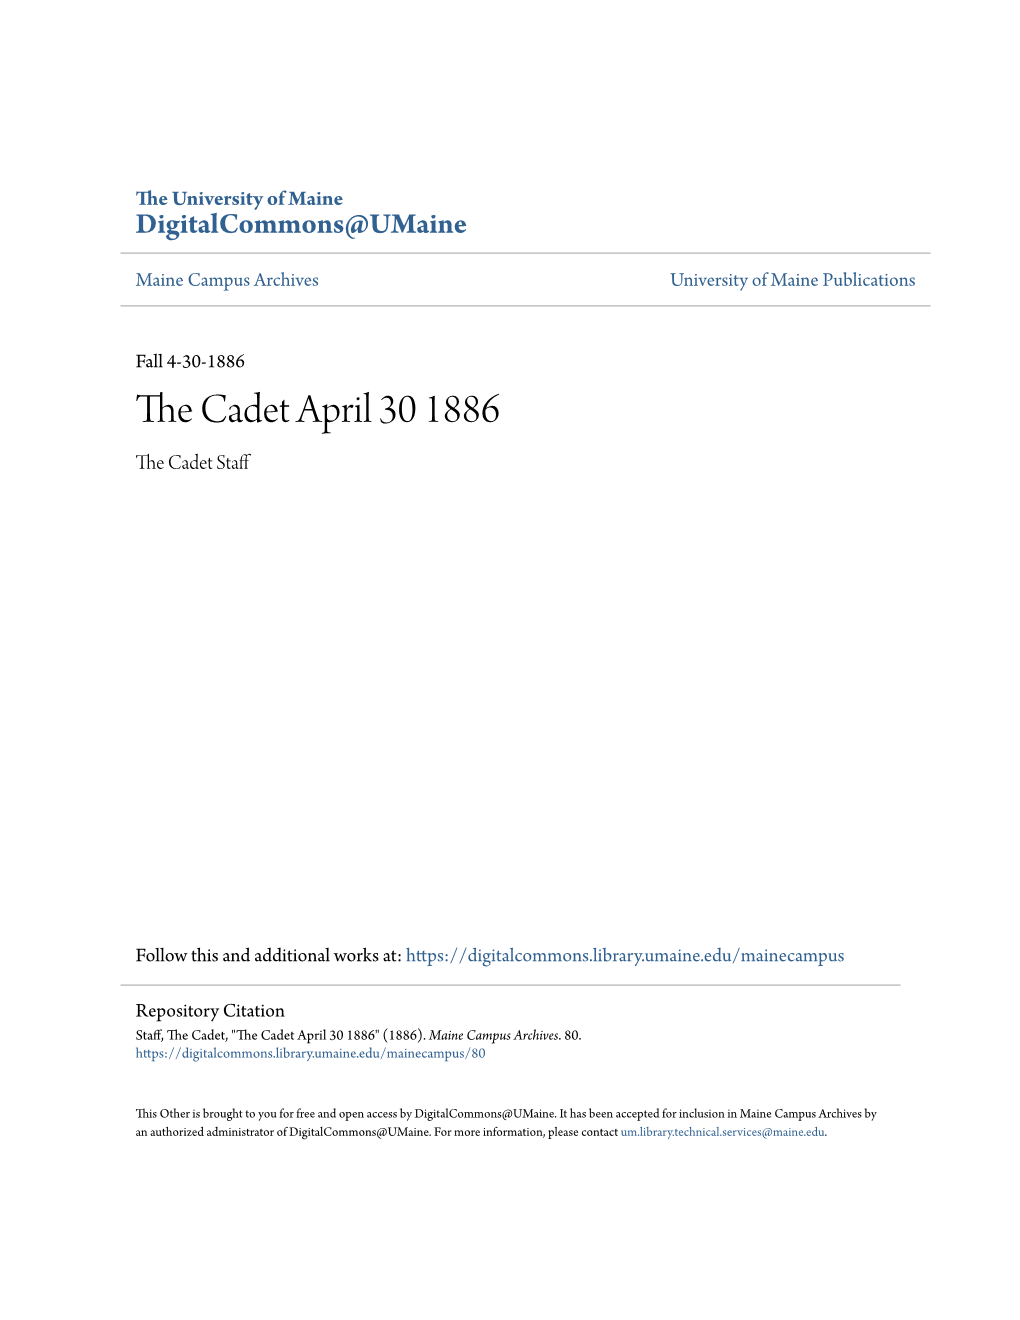 The Cadet April 30 1886